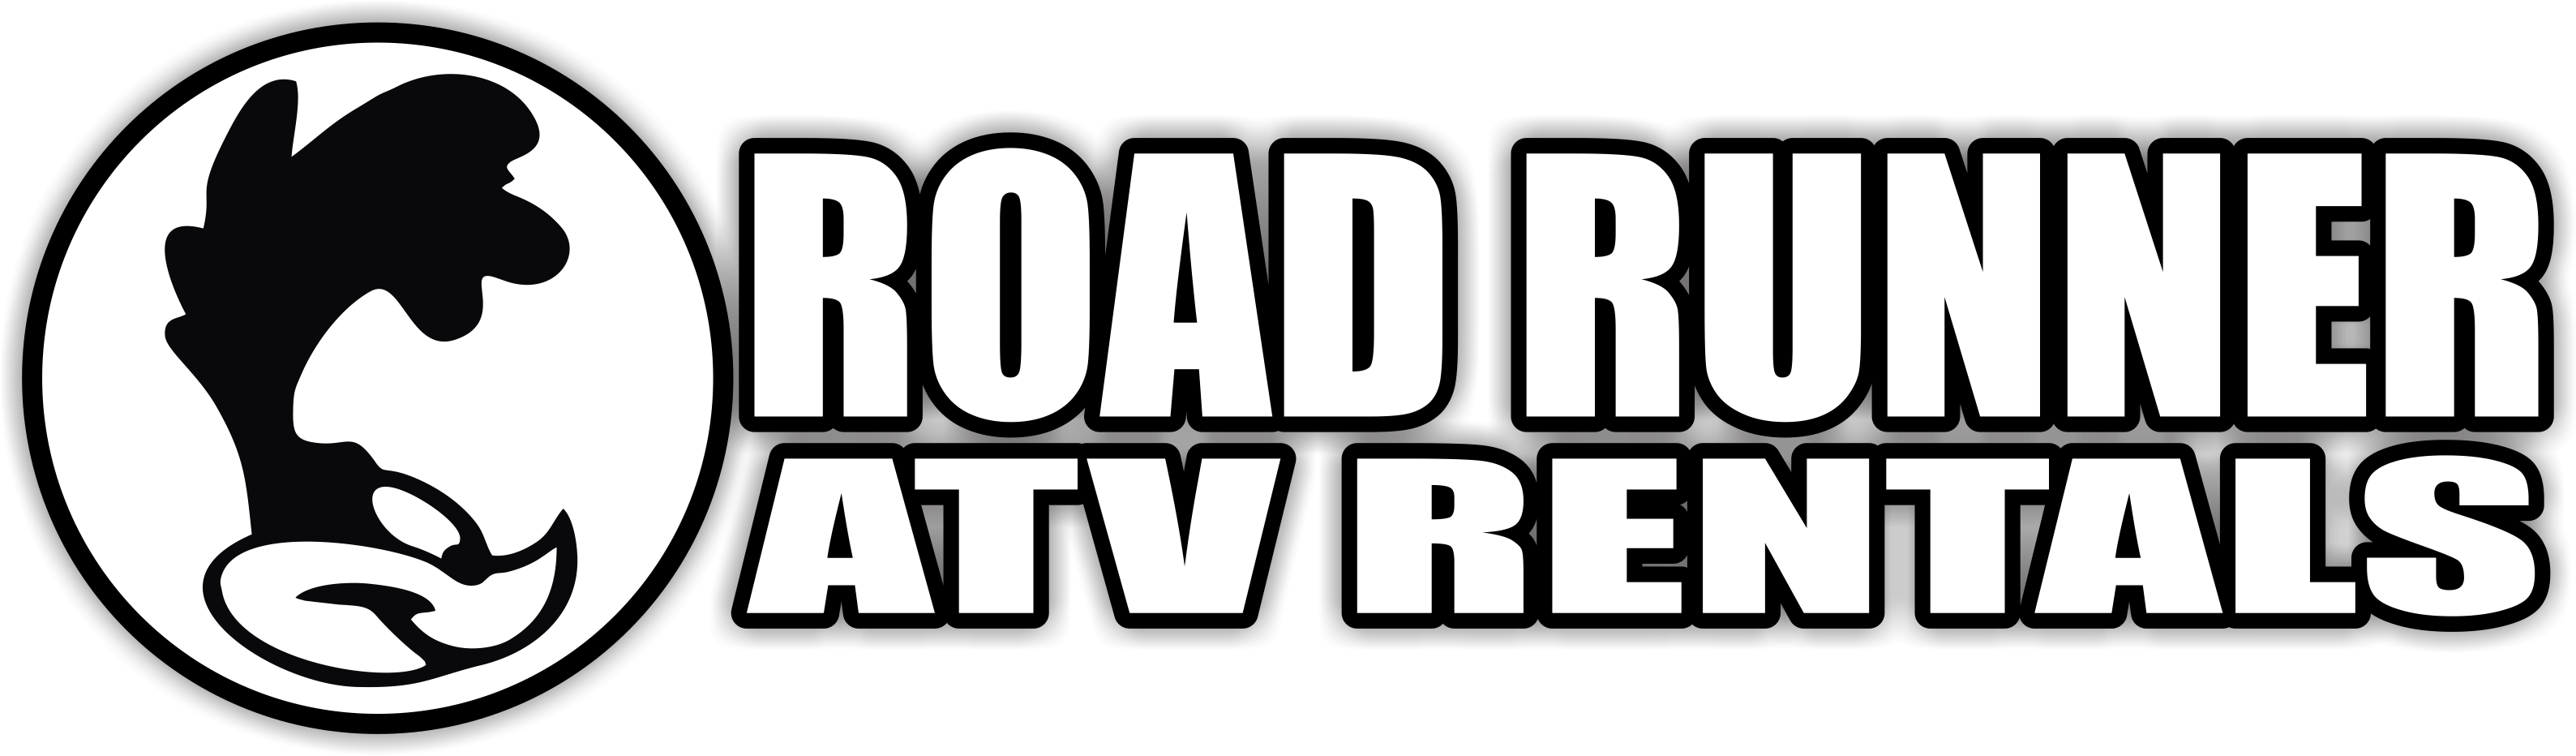 Free Roadrunner Clipart Black And White, Download Free Roadrunner ...